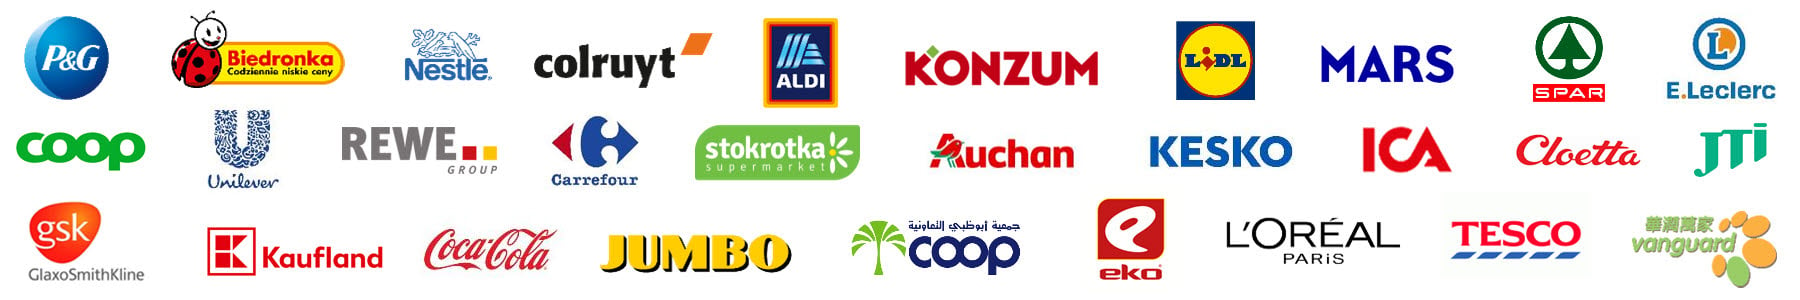 2019-partner-logos.jpg